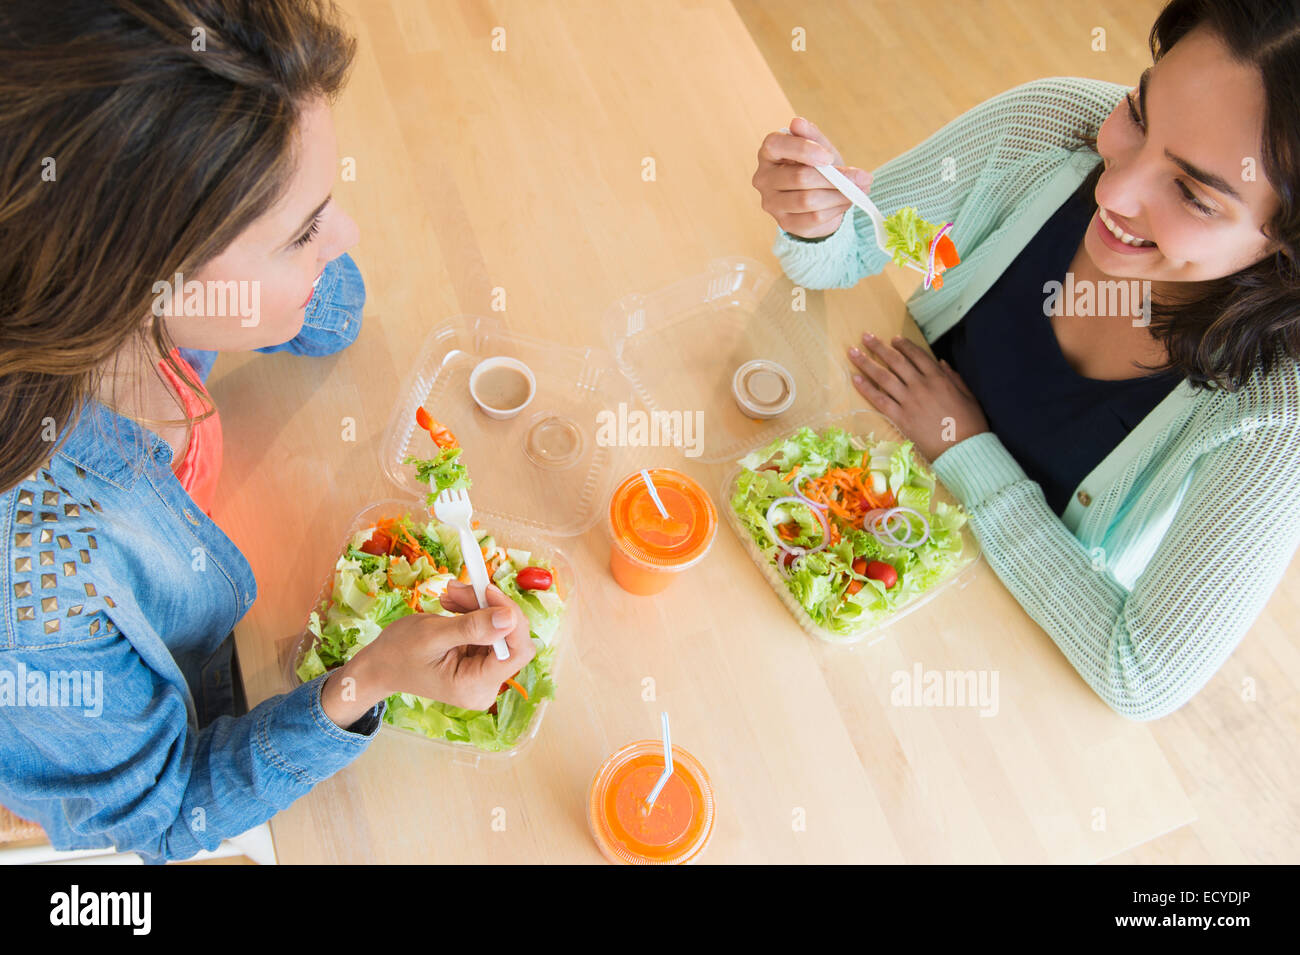 Hispanische Frauen essen Salat zusammen am Tisch Stockfoto